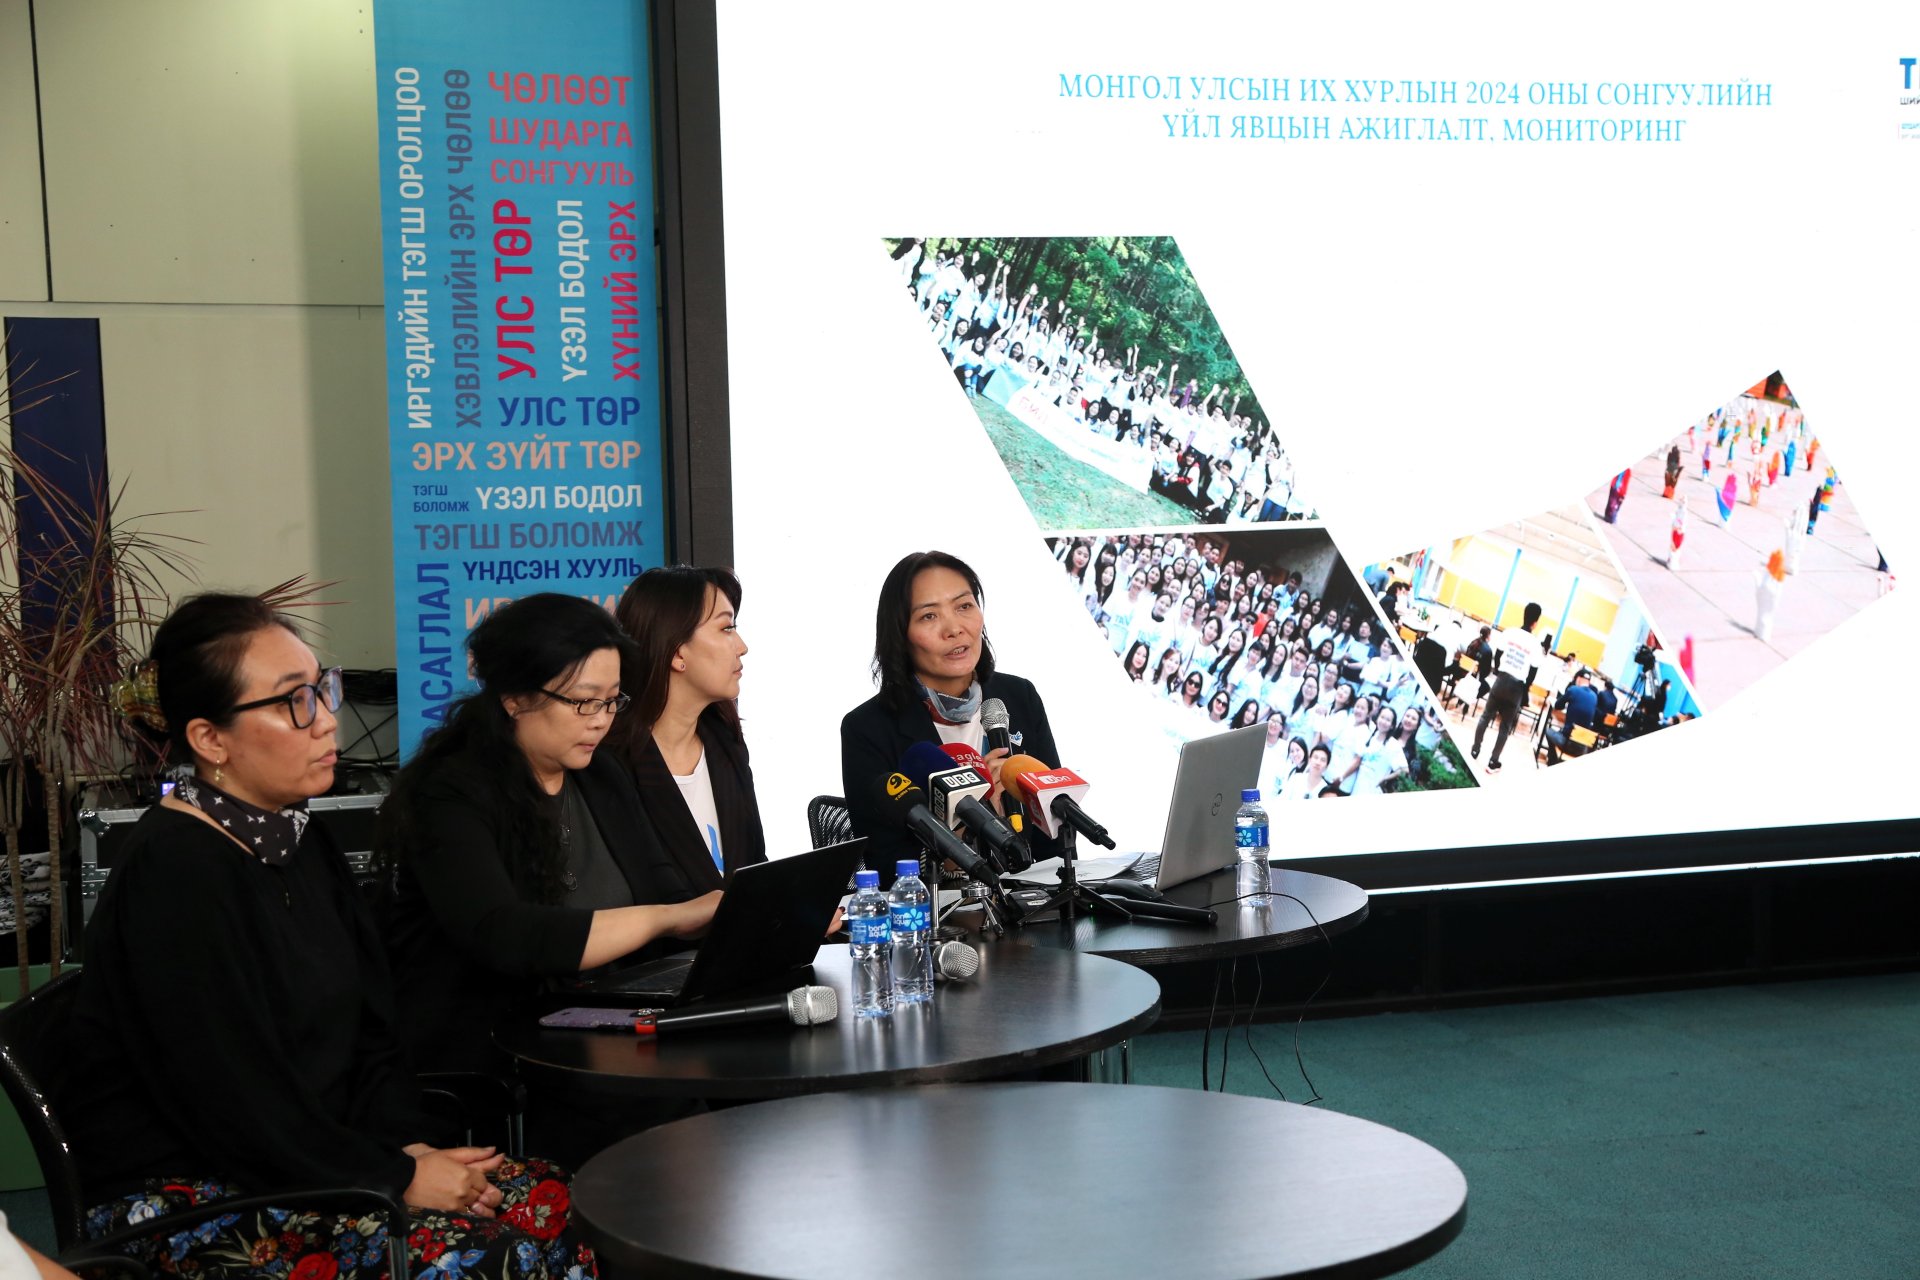 Монгол Улсын Их Хурлын 2024 оны сонгуулийн үйл явцад хийх ажиглалт, мониторингийн талаар хэвлэлийн бага хурал хийлээ